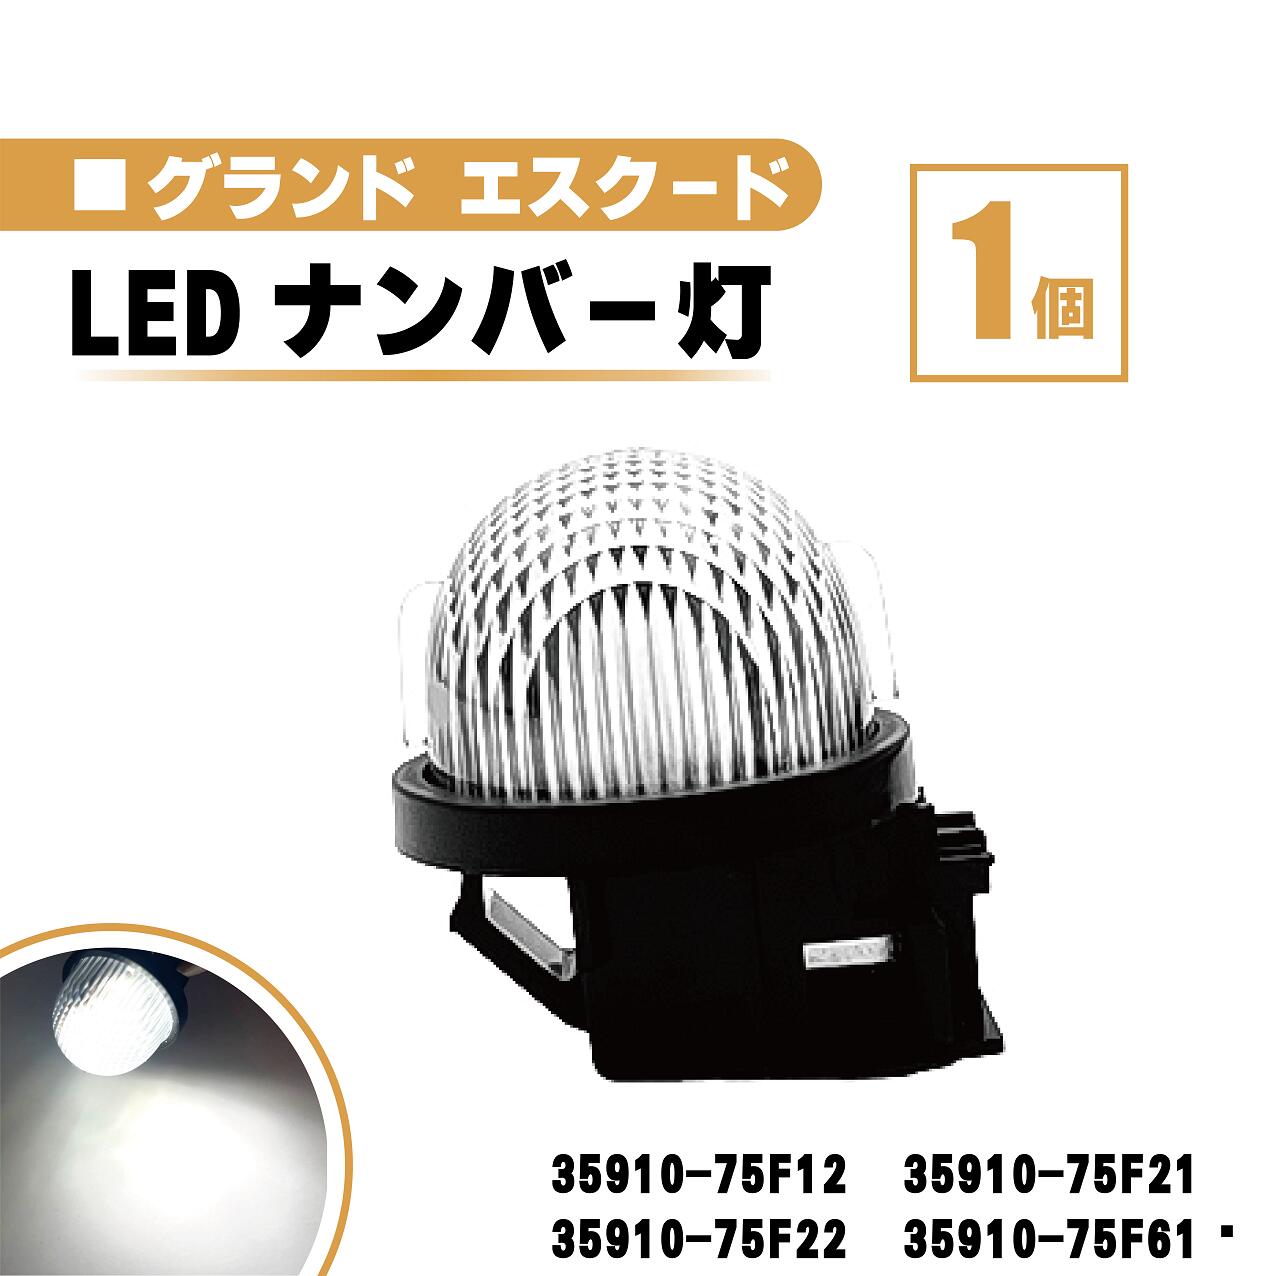 スズキ グランドエスクード LED ナンバー 灯 1個 レンズ 一体型 リア ライセンスプレート ランプ ライト 白 ホワイト 高輝度 TX92 送料無料　35910-75F12 35910-75F21 35910-75F22 35910-75F61